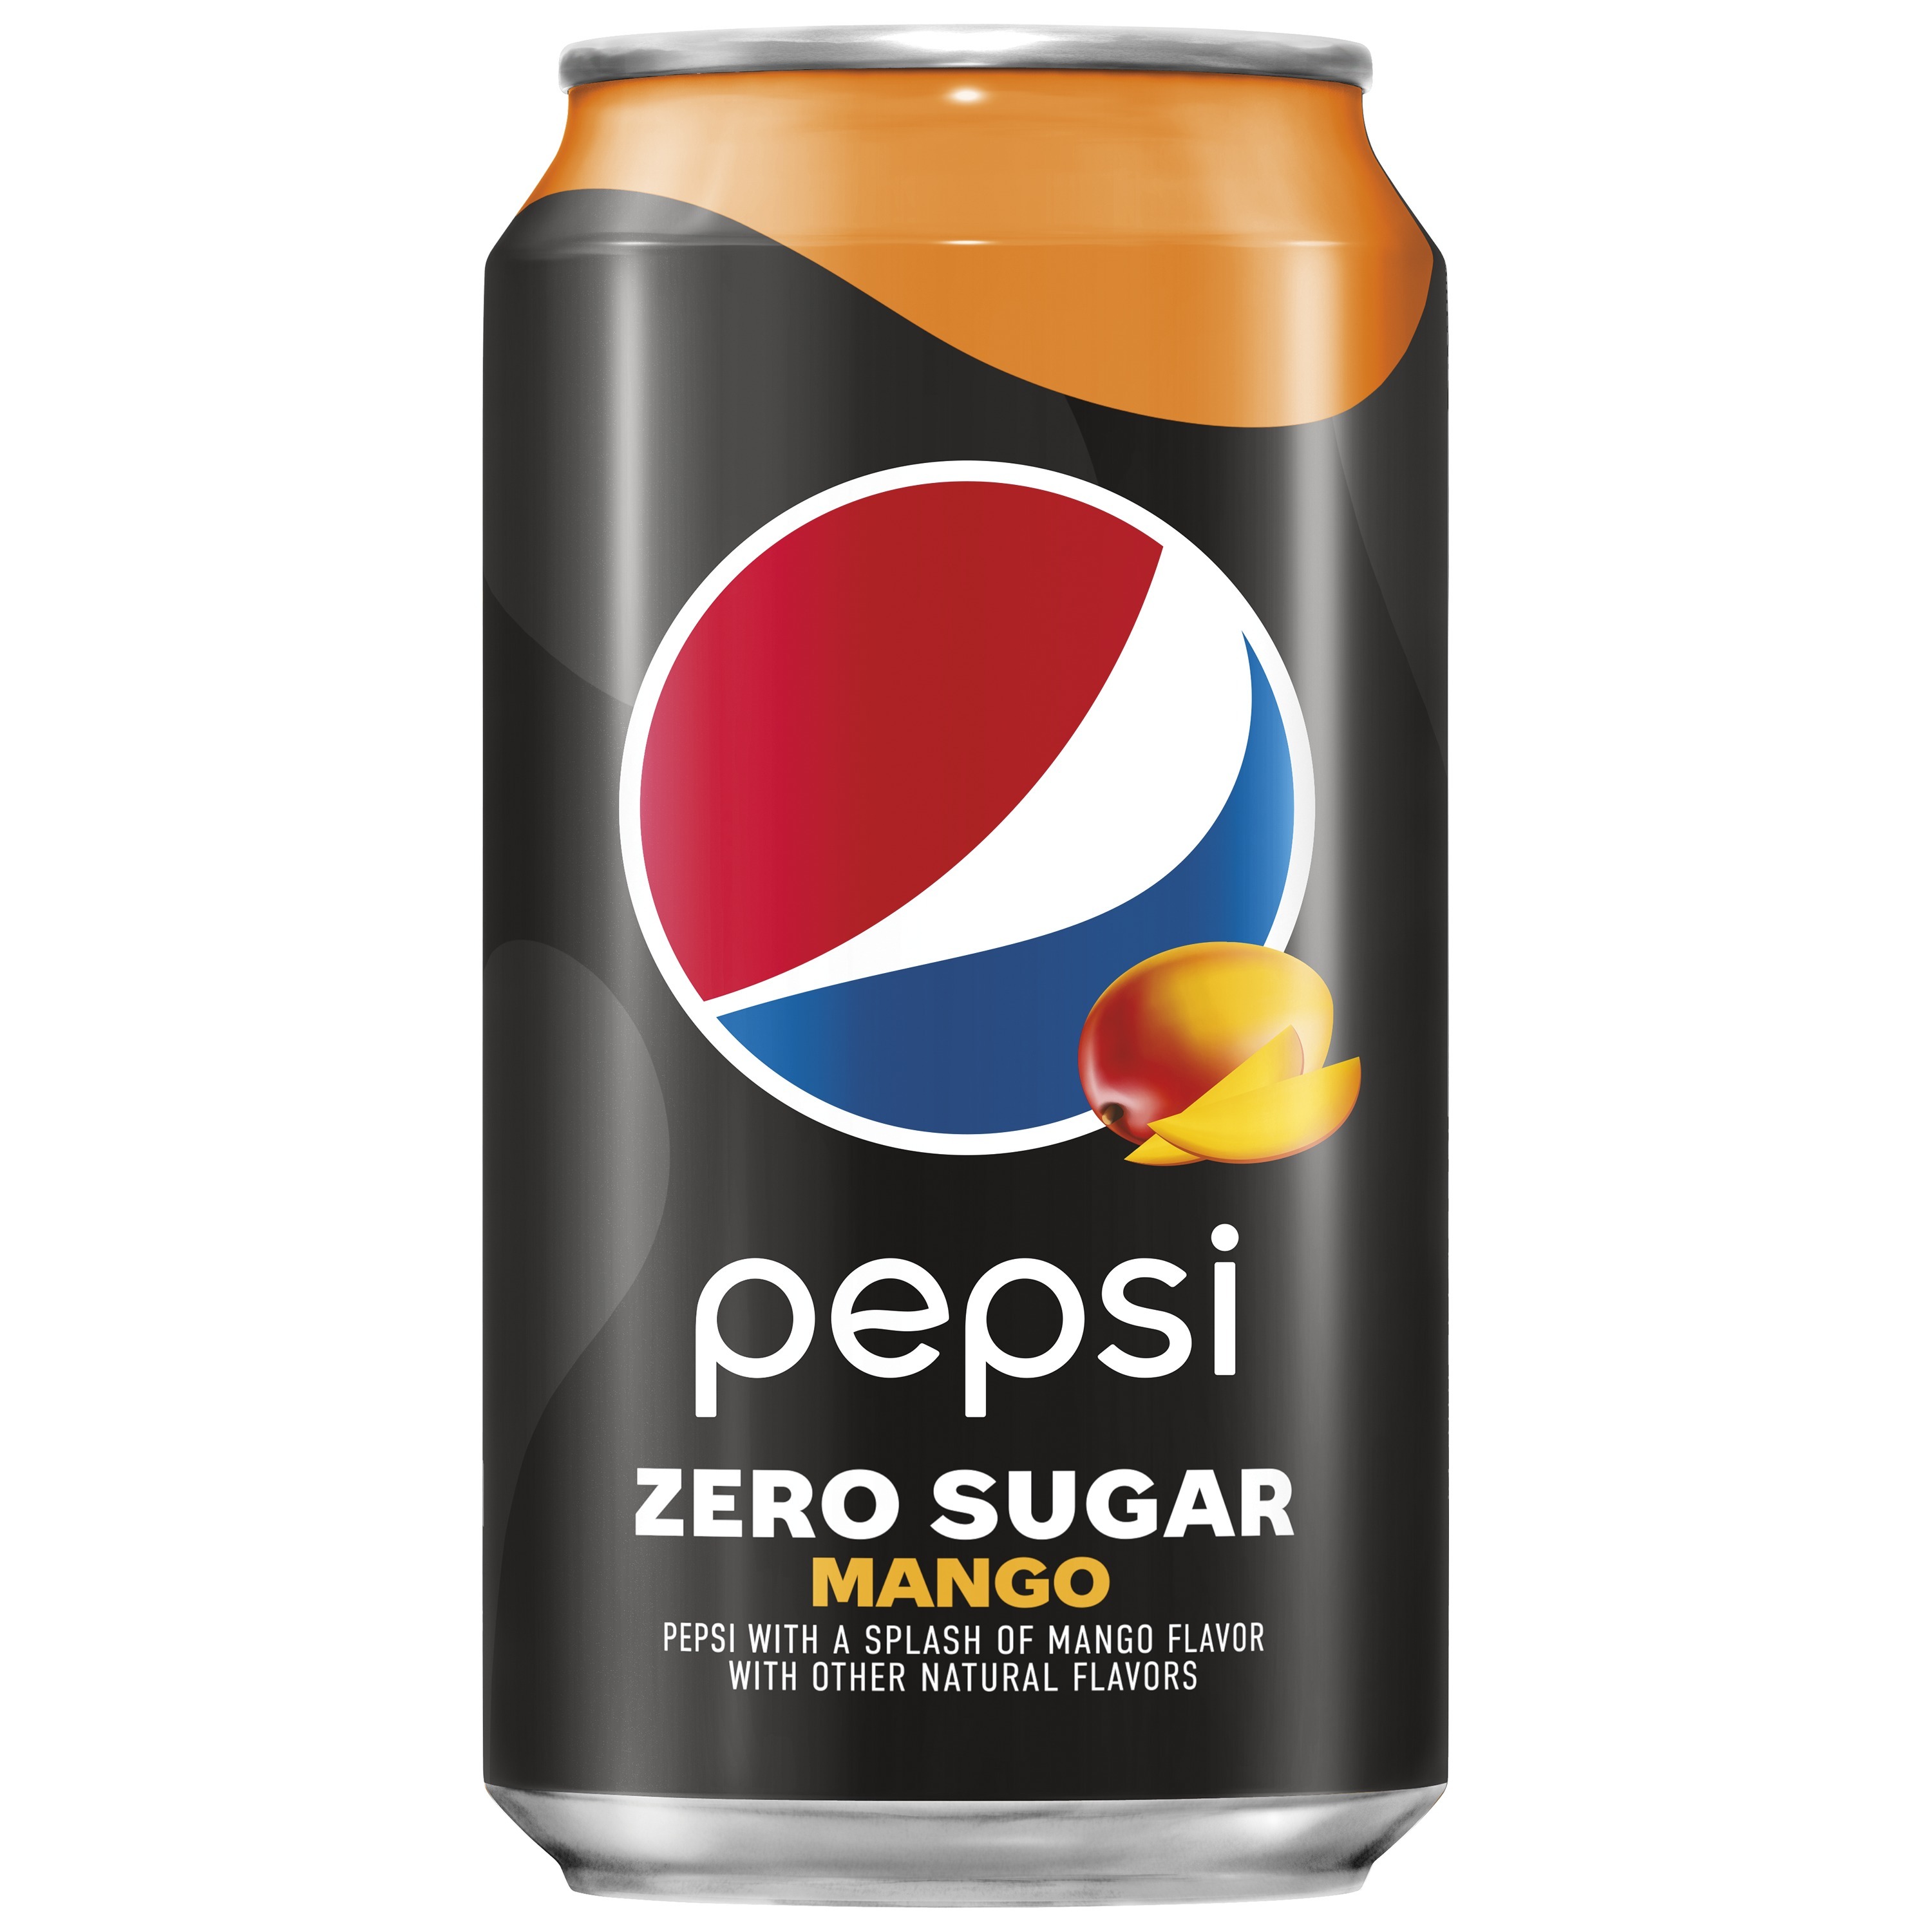 Pepsi, Zero Sugar, Mango Flavor - SmartLabel™